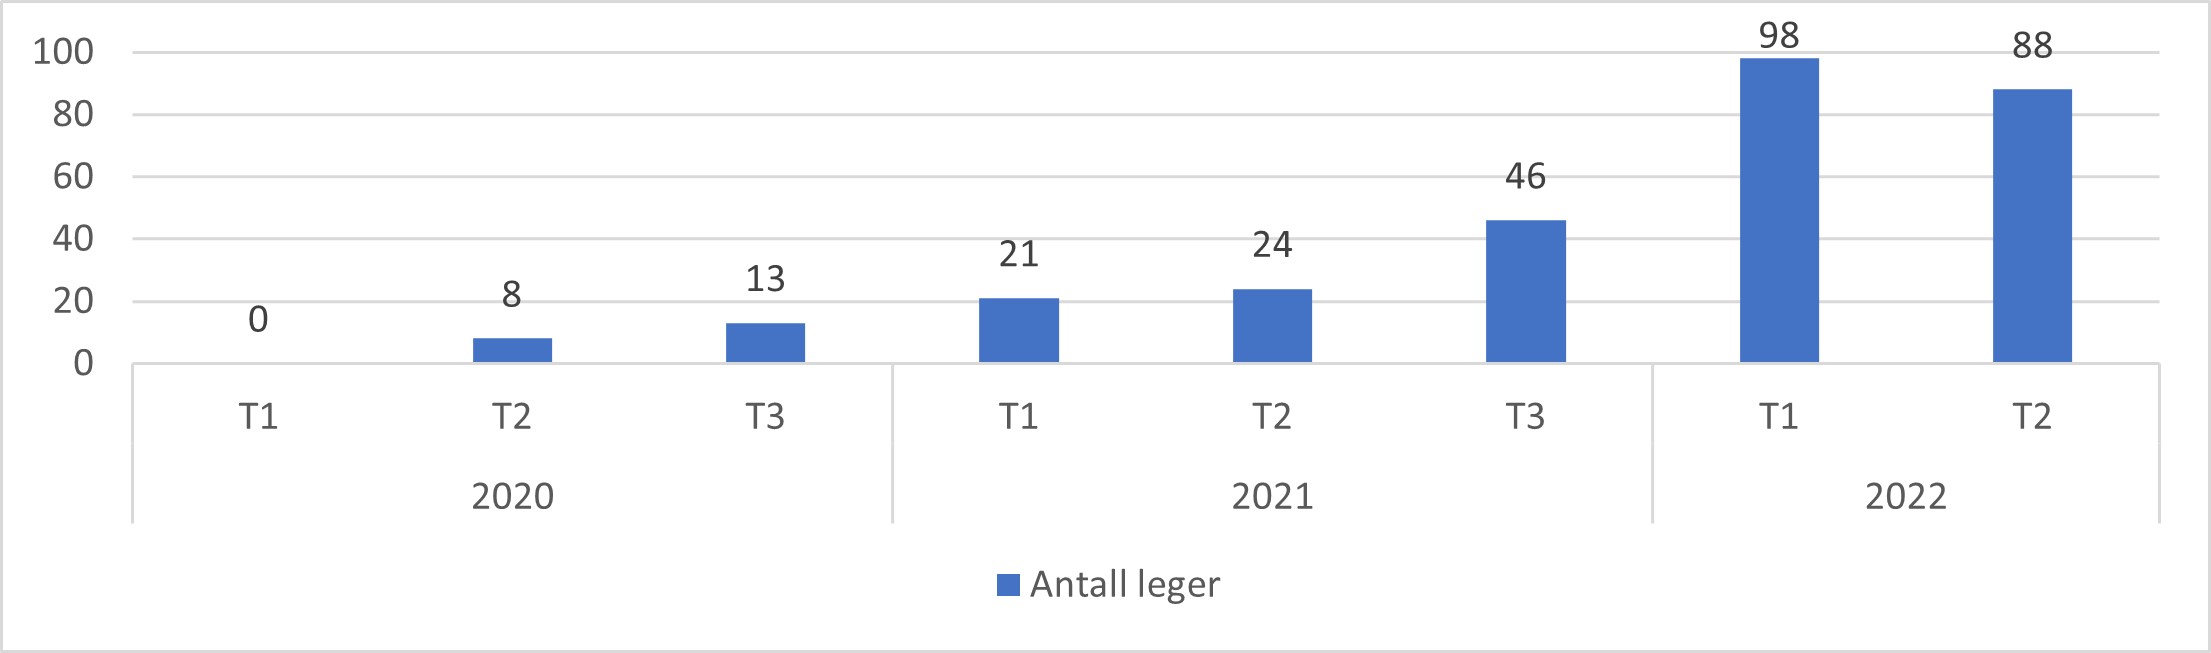 Netto kumulativ tilvekst av fastleger fra 1. tertial 2019 til 2. tertial 2022..jpg